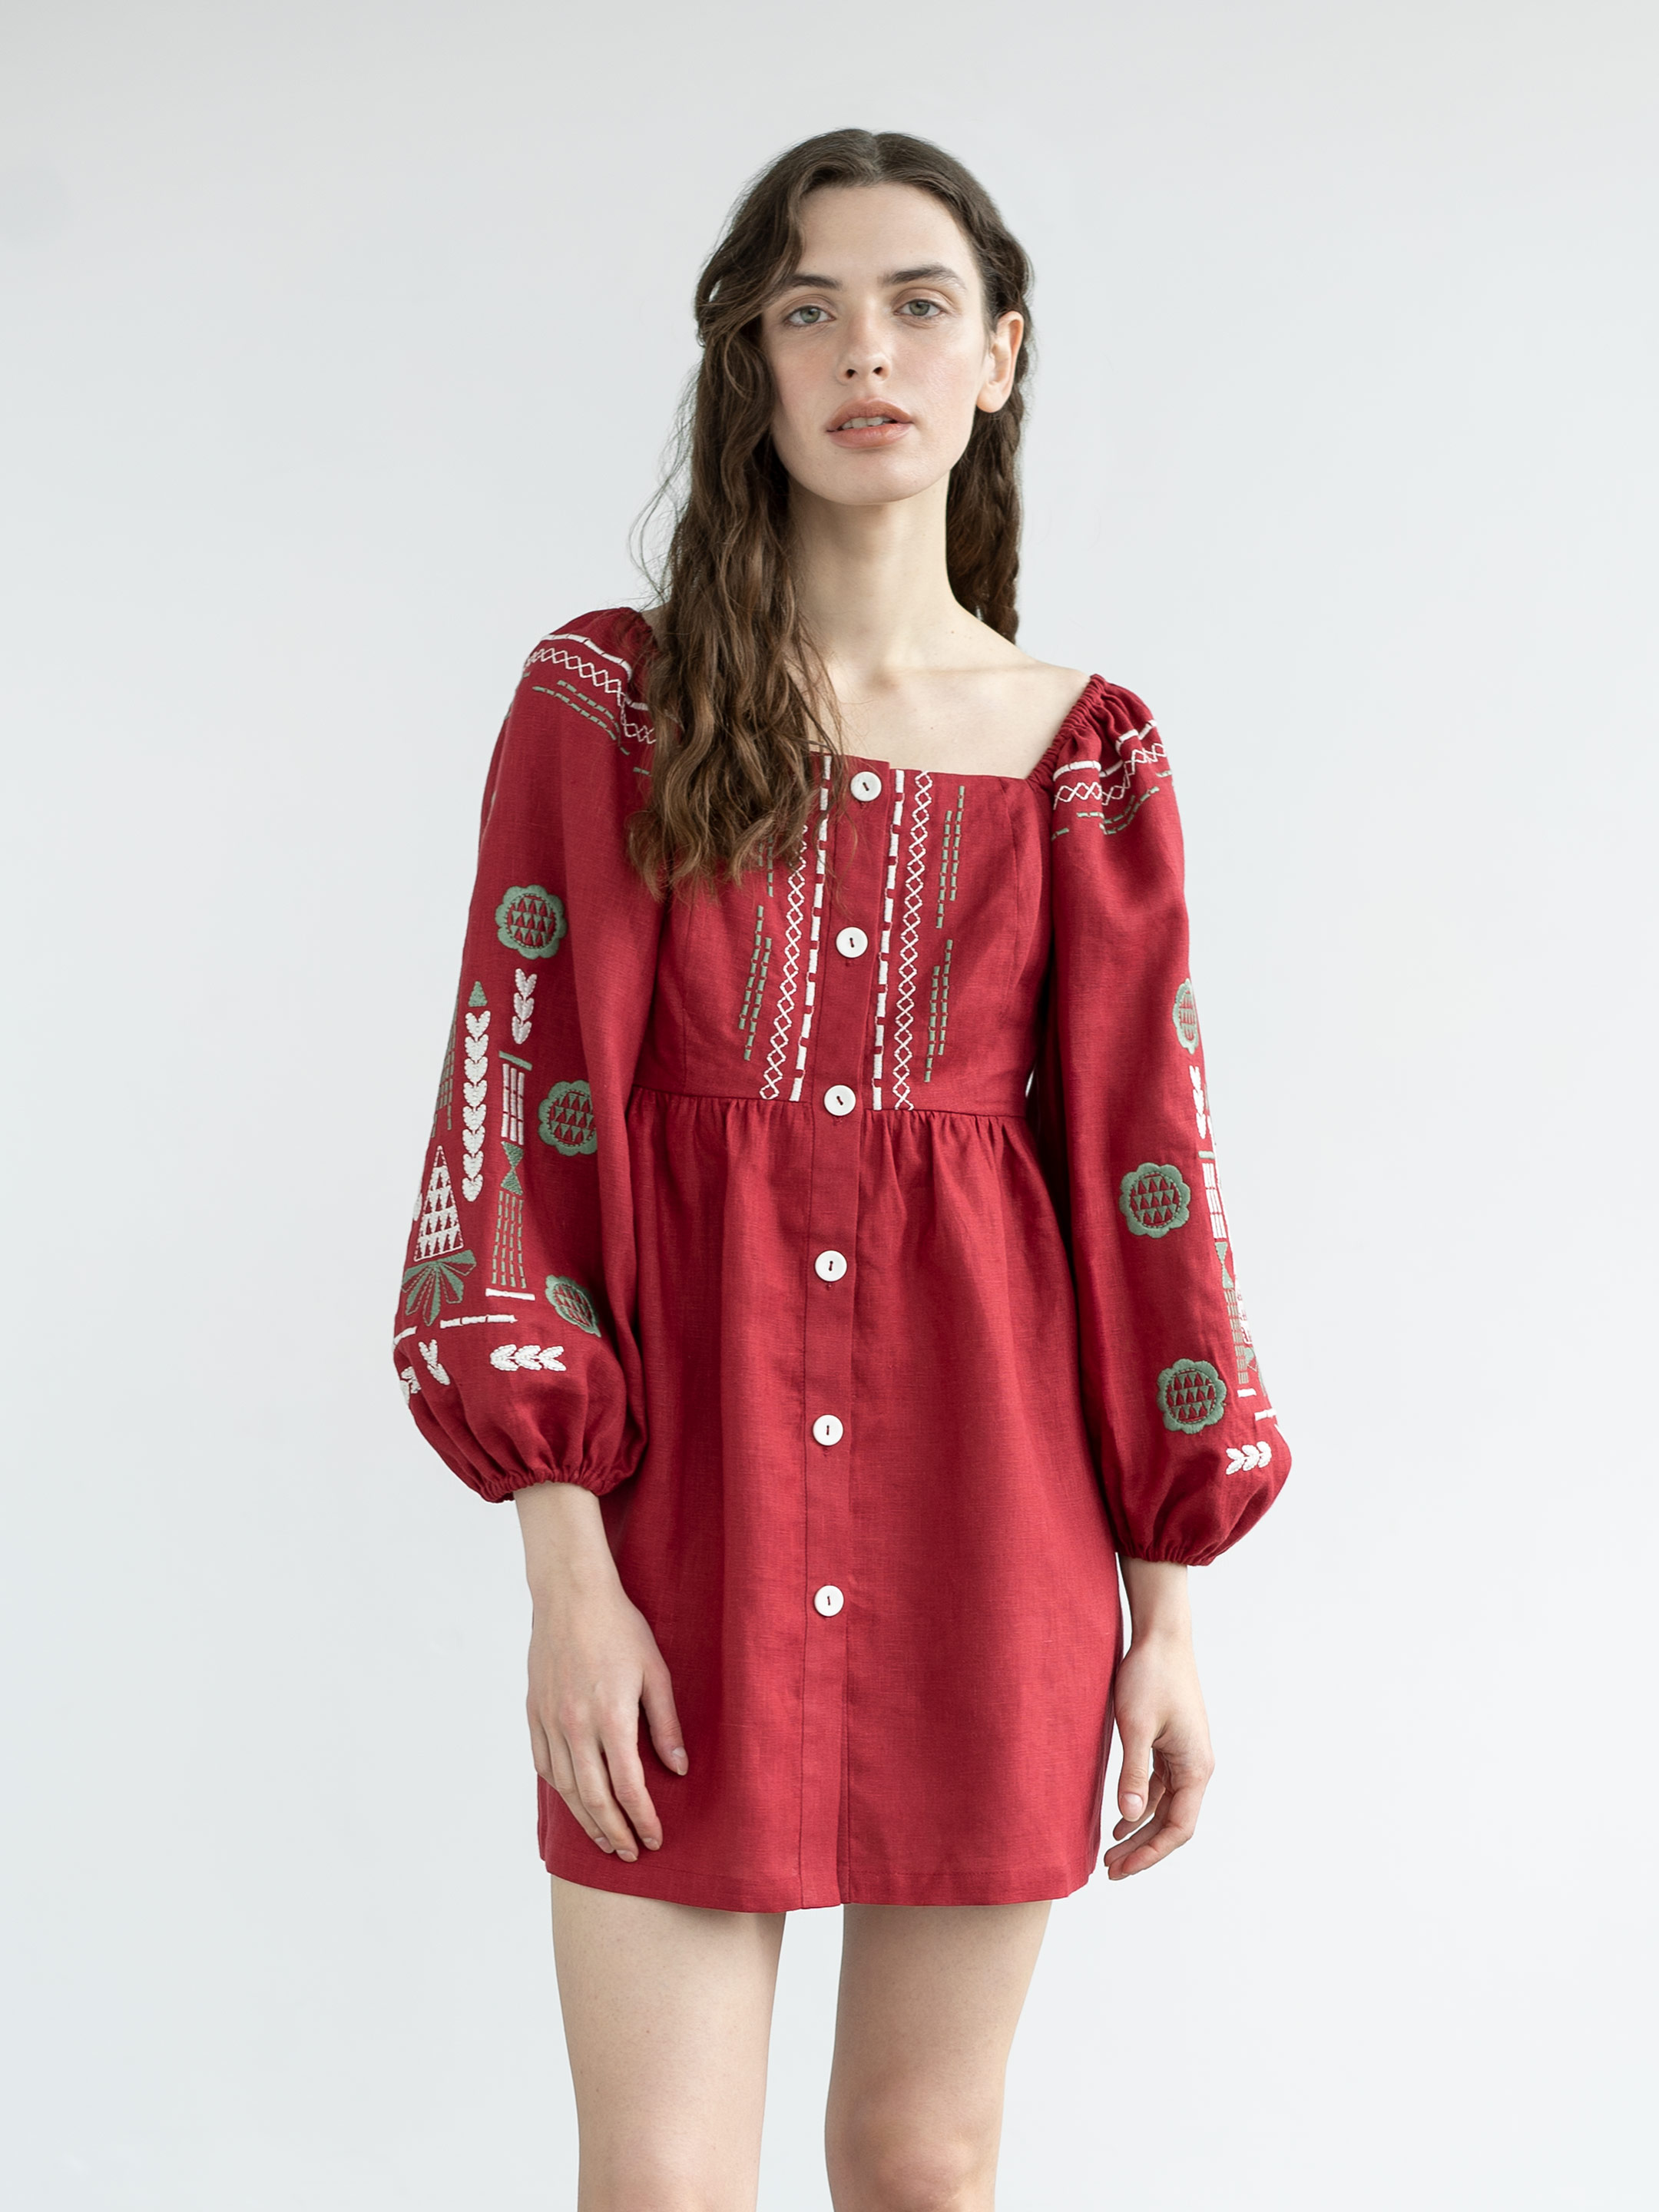 Лляна сукня бордового кольору з вишивкою Red Mozaika - фото 1